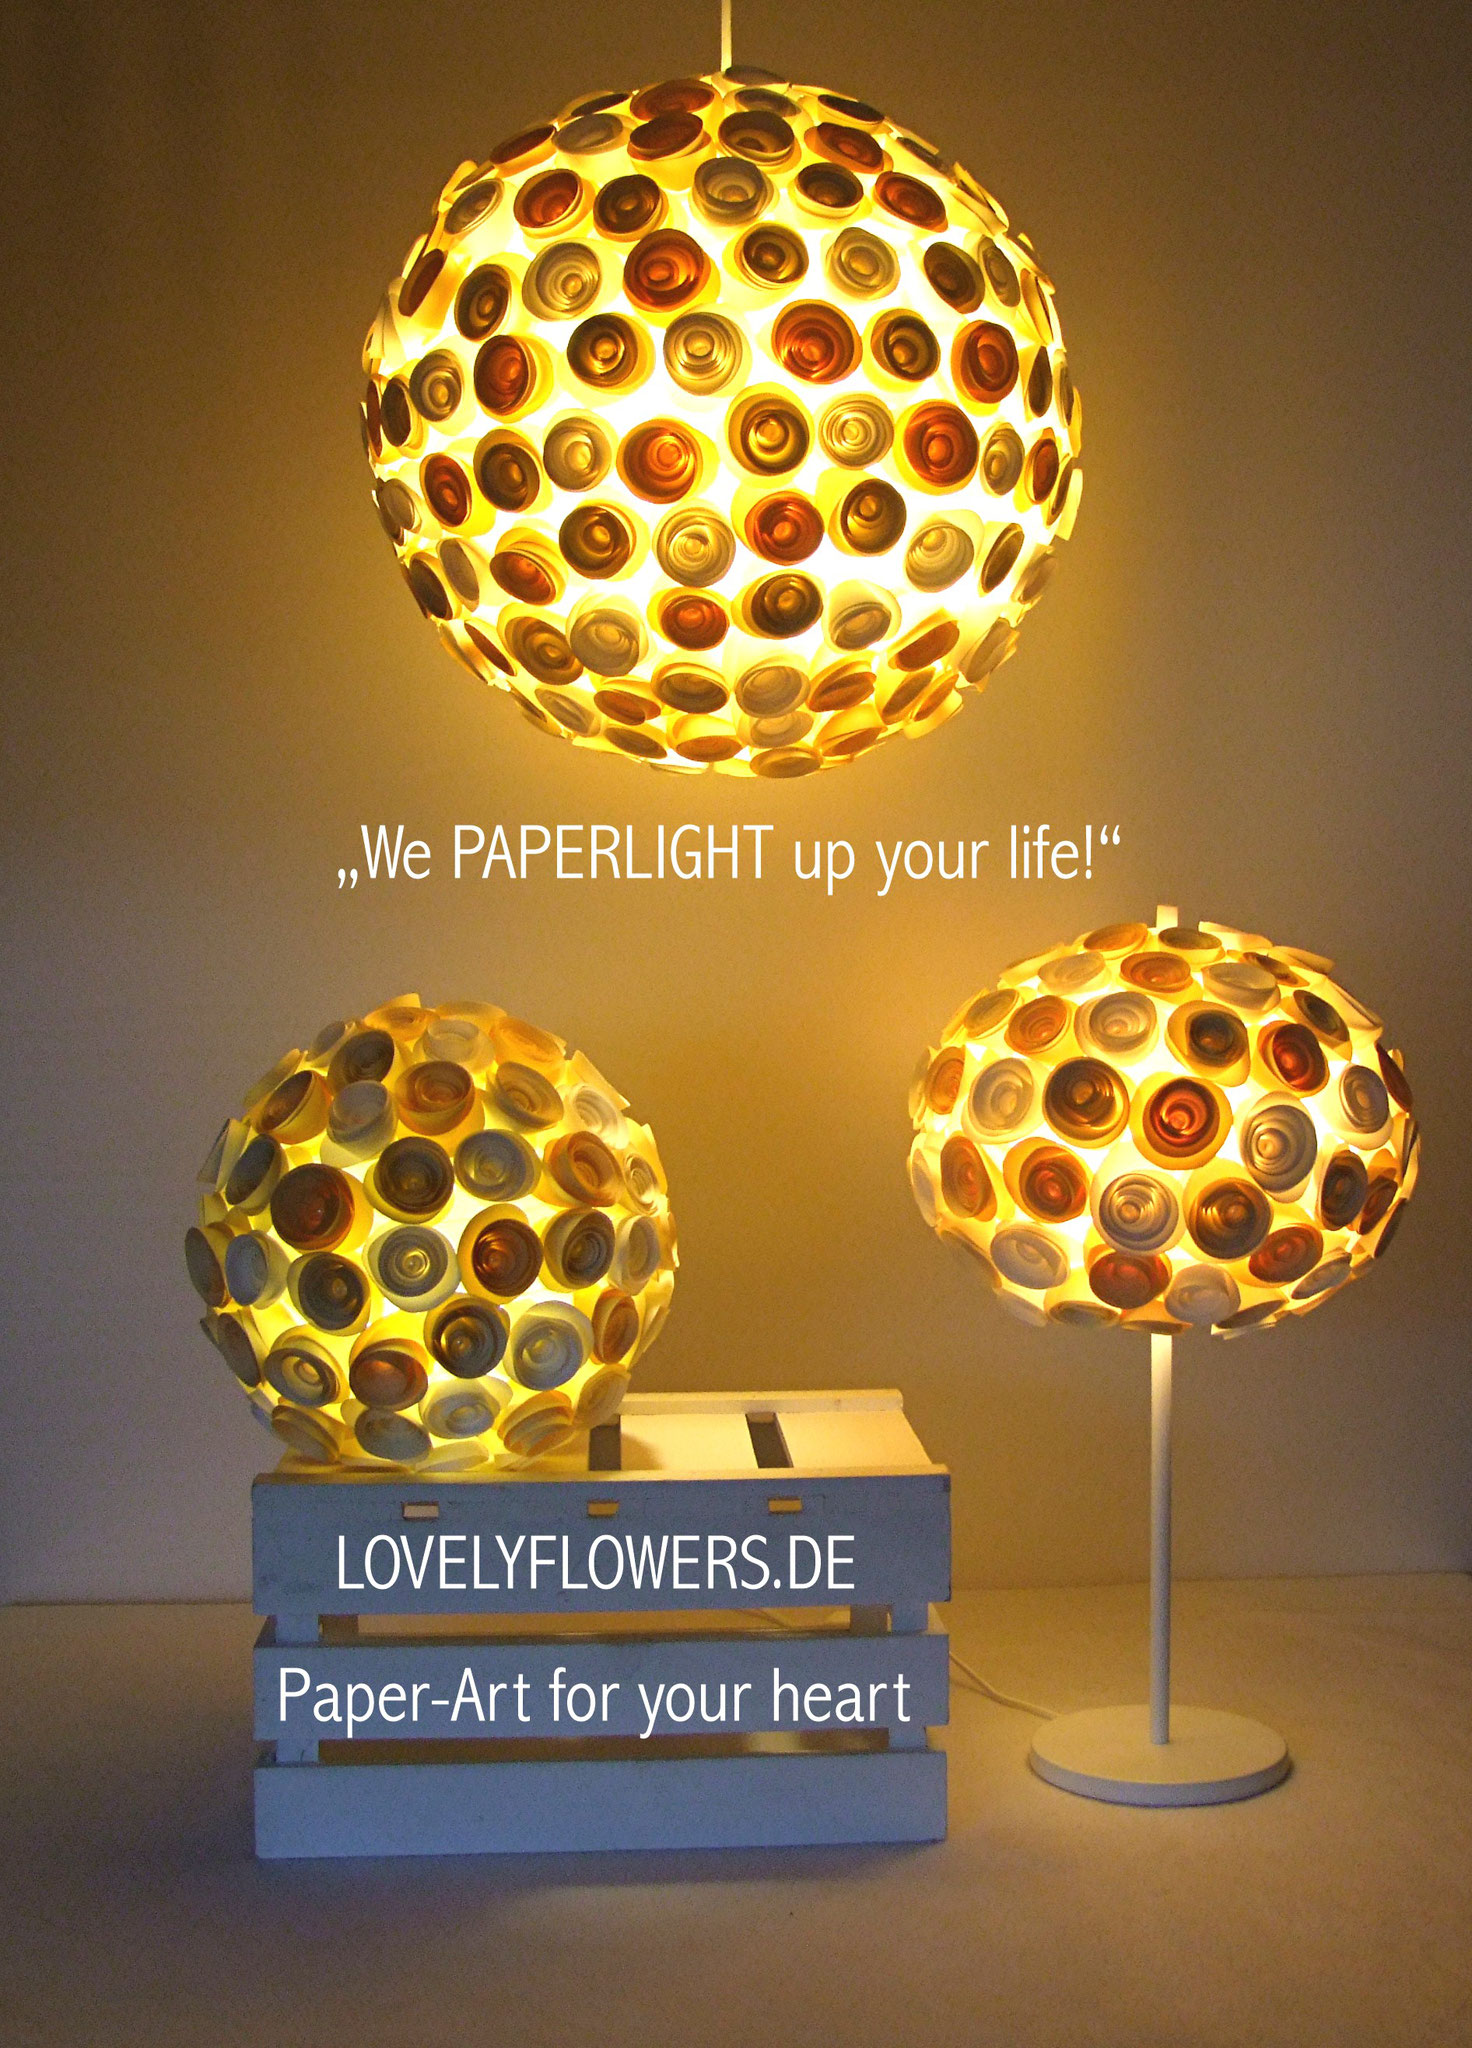 www.lovelyflowers.de - Paper Art Lampen machens Dir romantisch!